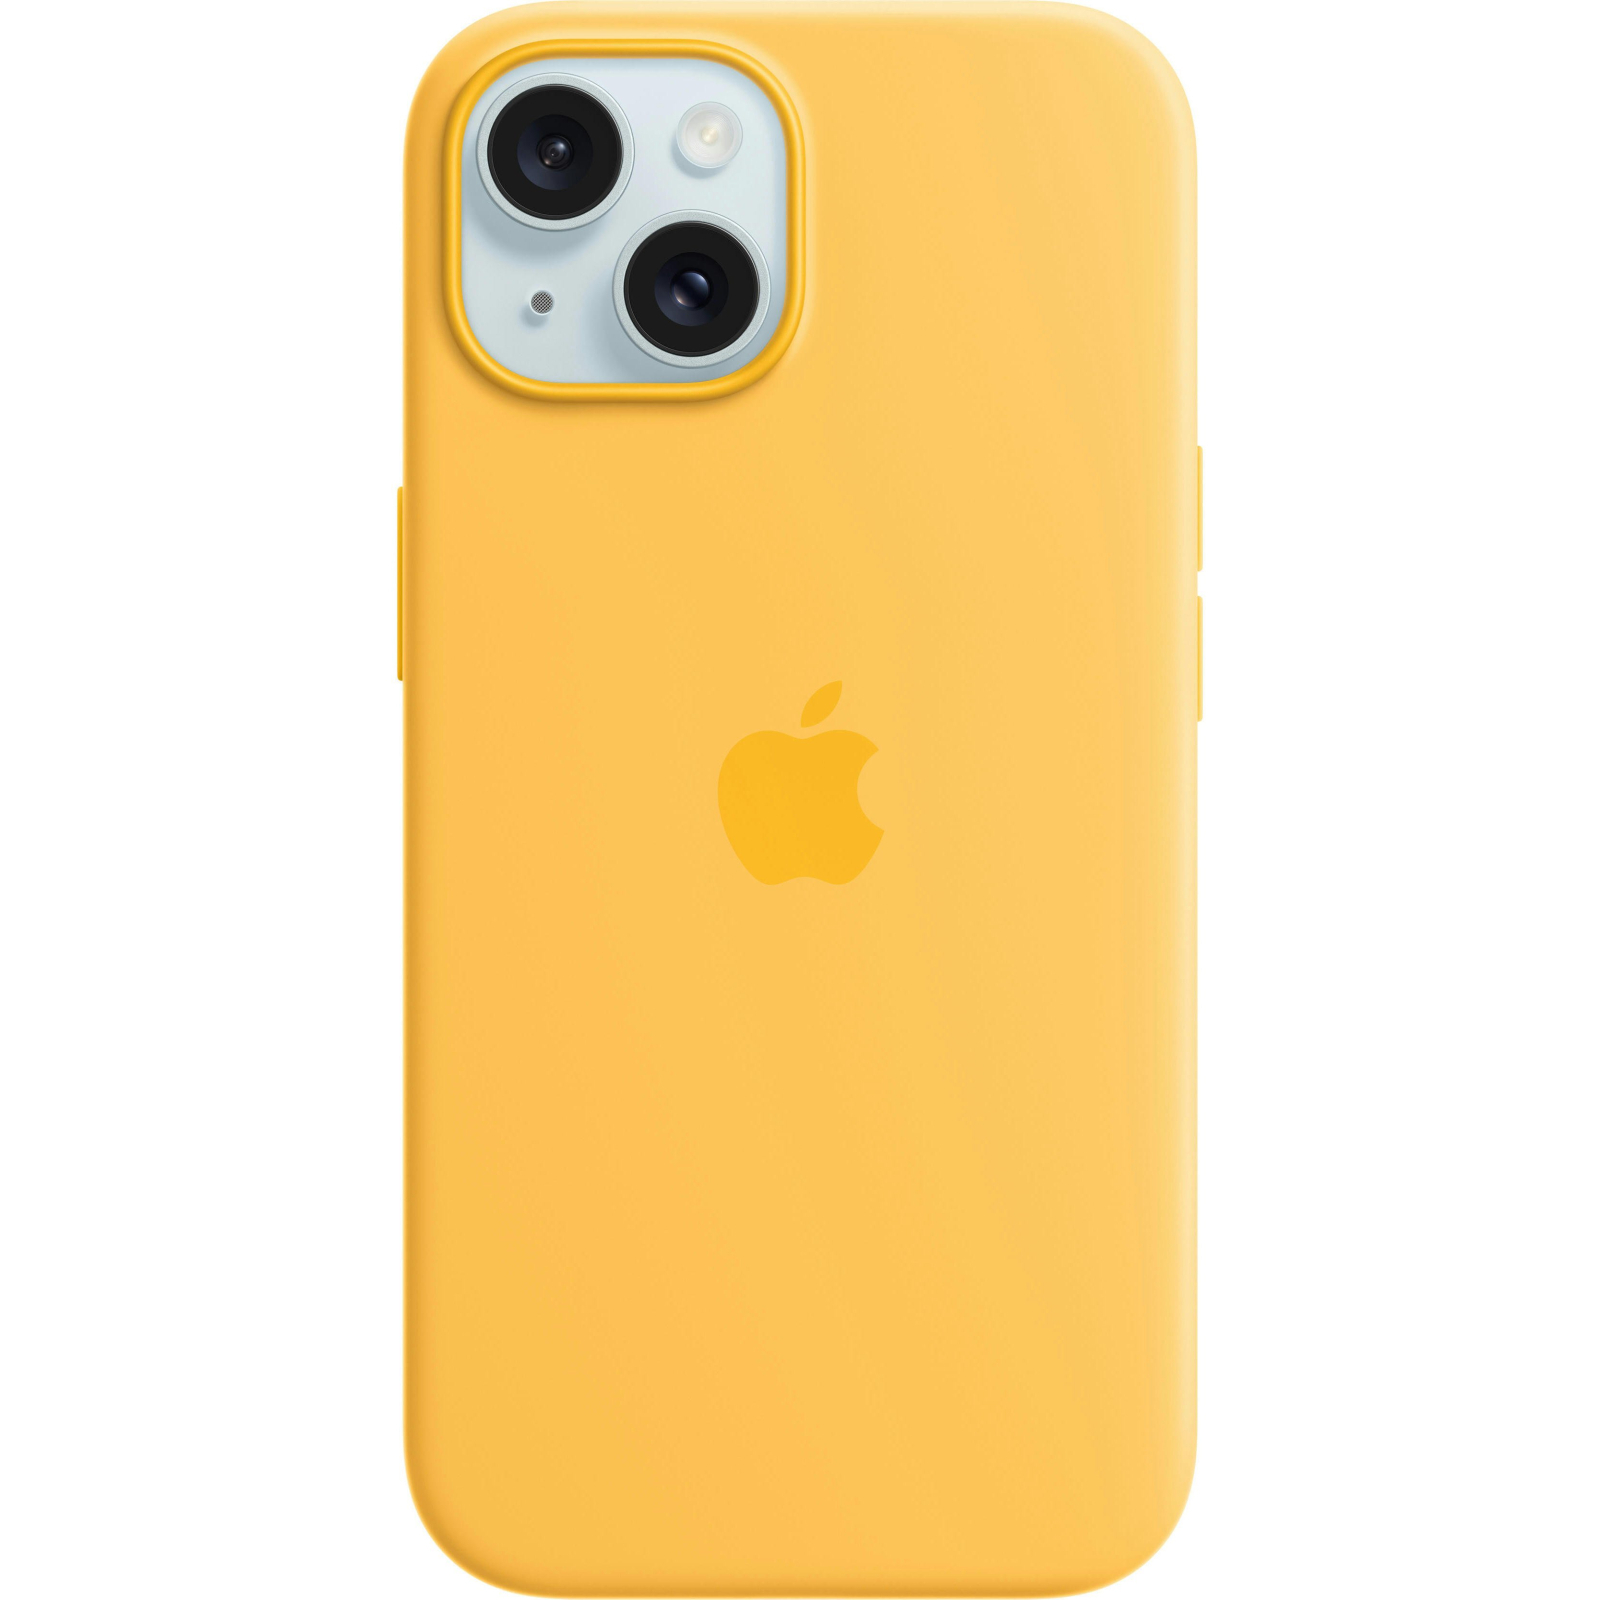 Чехол для мобильного телефона Apple iPhone 15 Silicone Case with MagSafe - Light Blue,Model A3123 (MWND3ZM/A) изображение 2